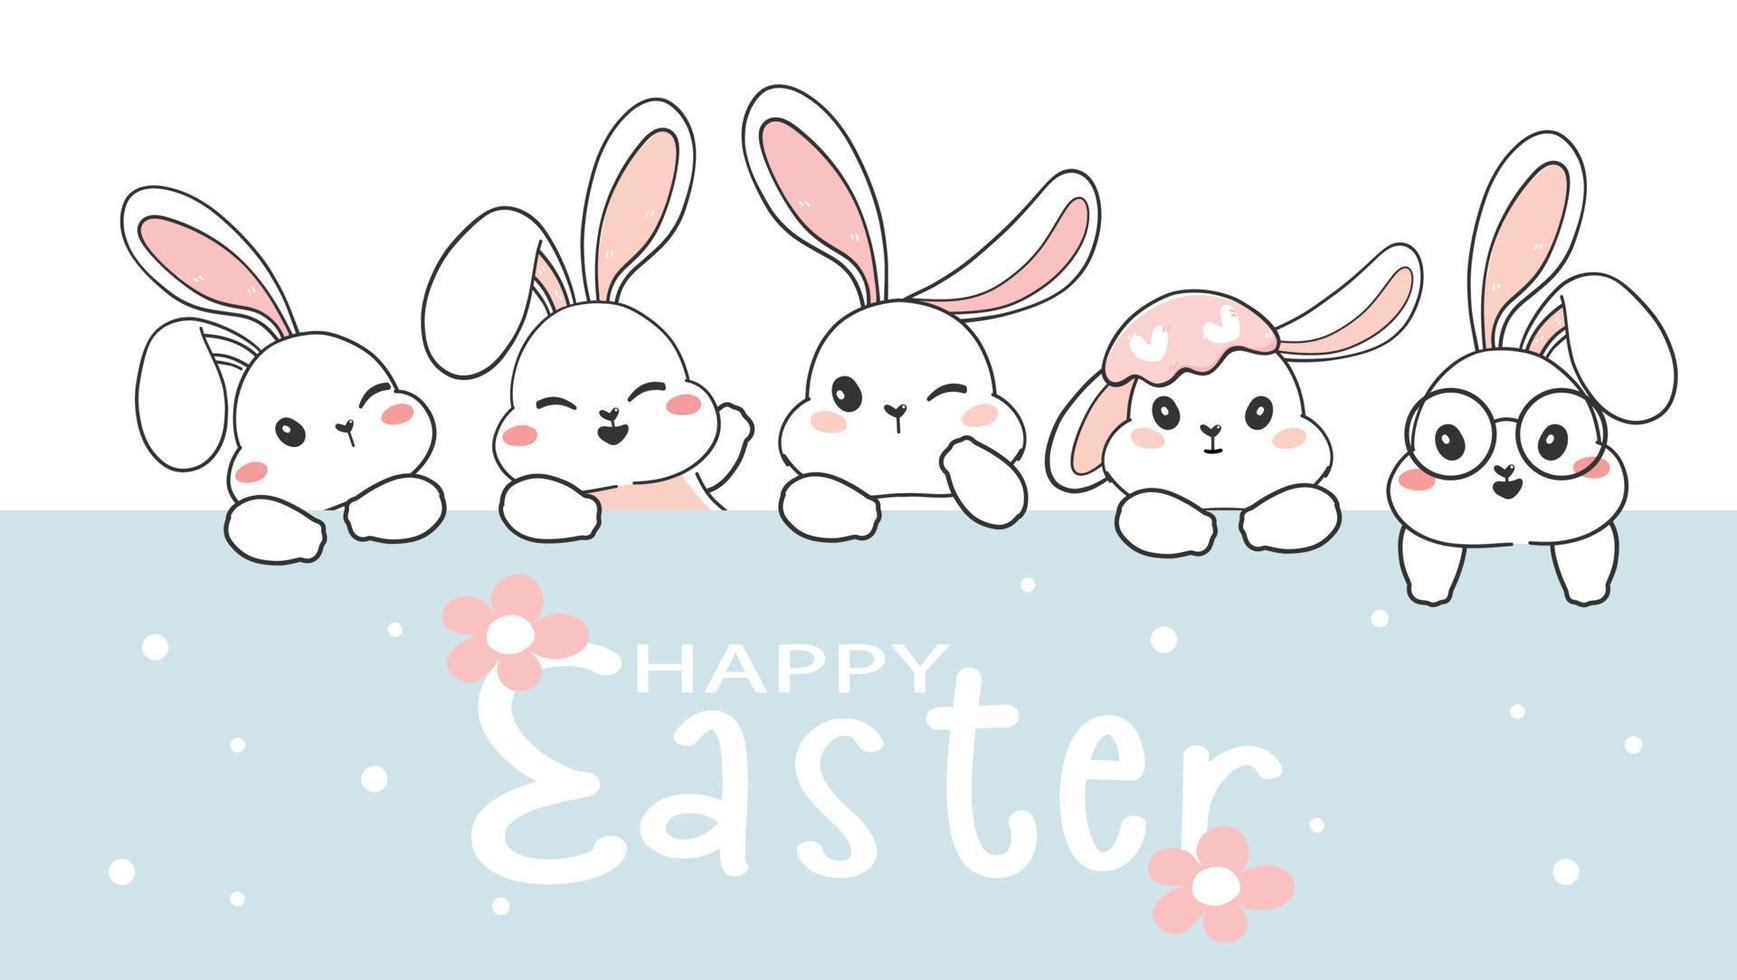 linda tarjeta de felicitación feliz de pascua, grupo de cabezas de conejo blanco, conjunto de caracteres de conejo lindo, vector de dibujo de vacaciones de animales de vida silvestre de dibujos animados